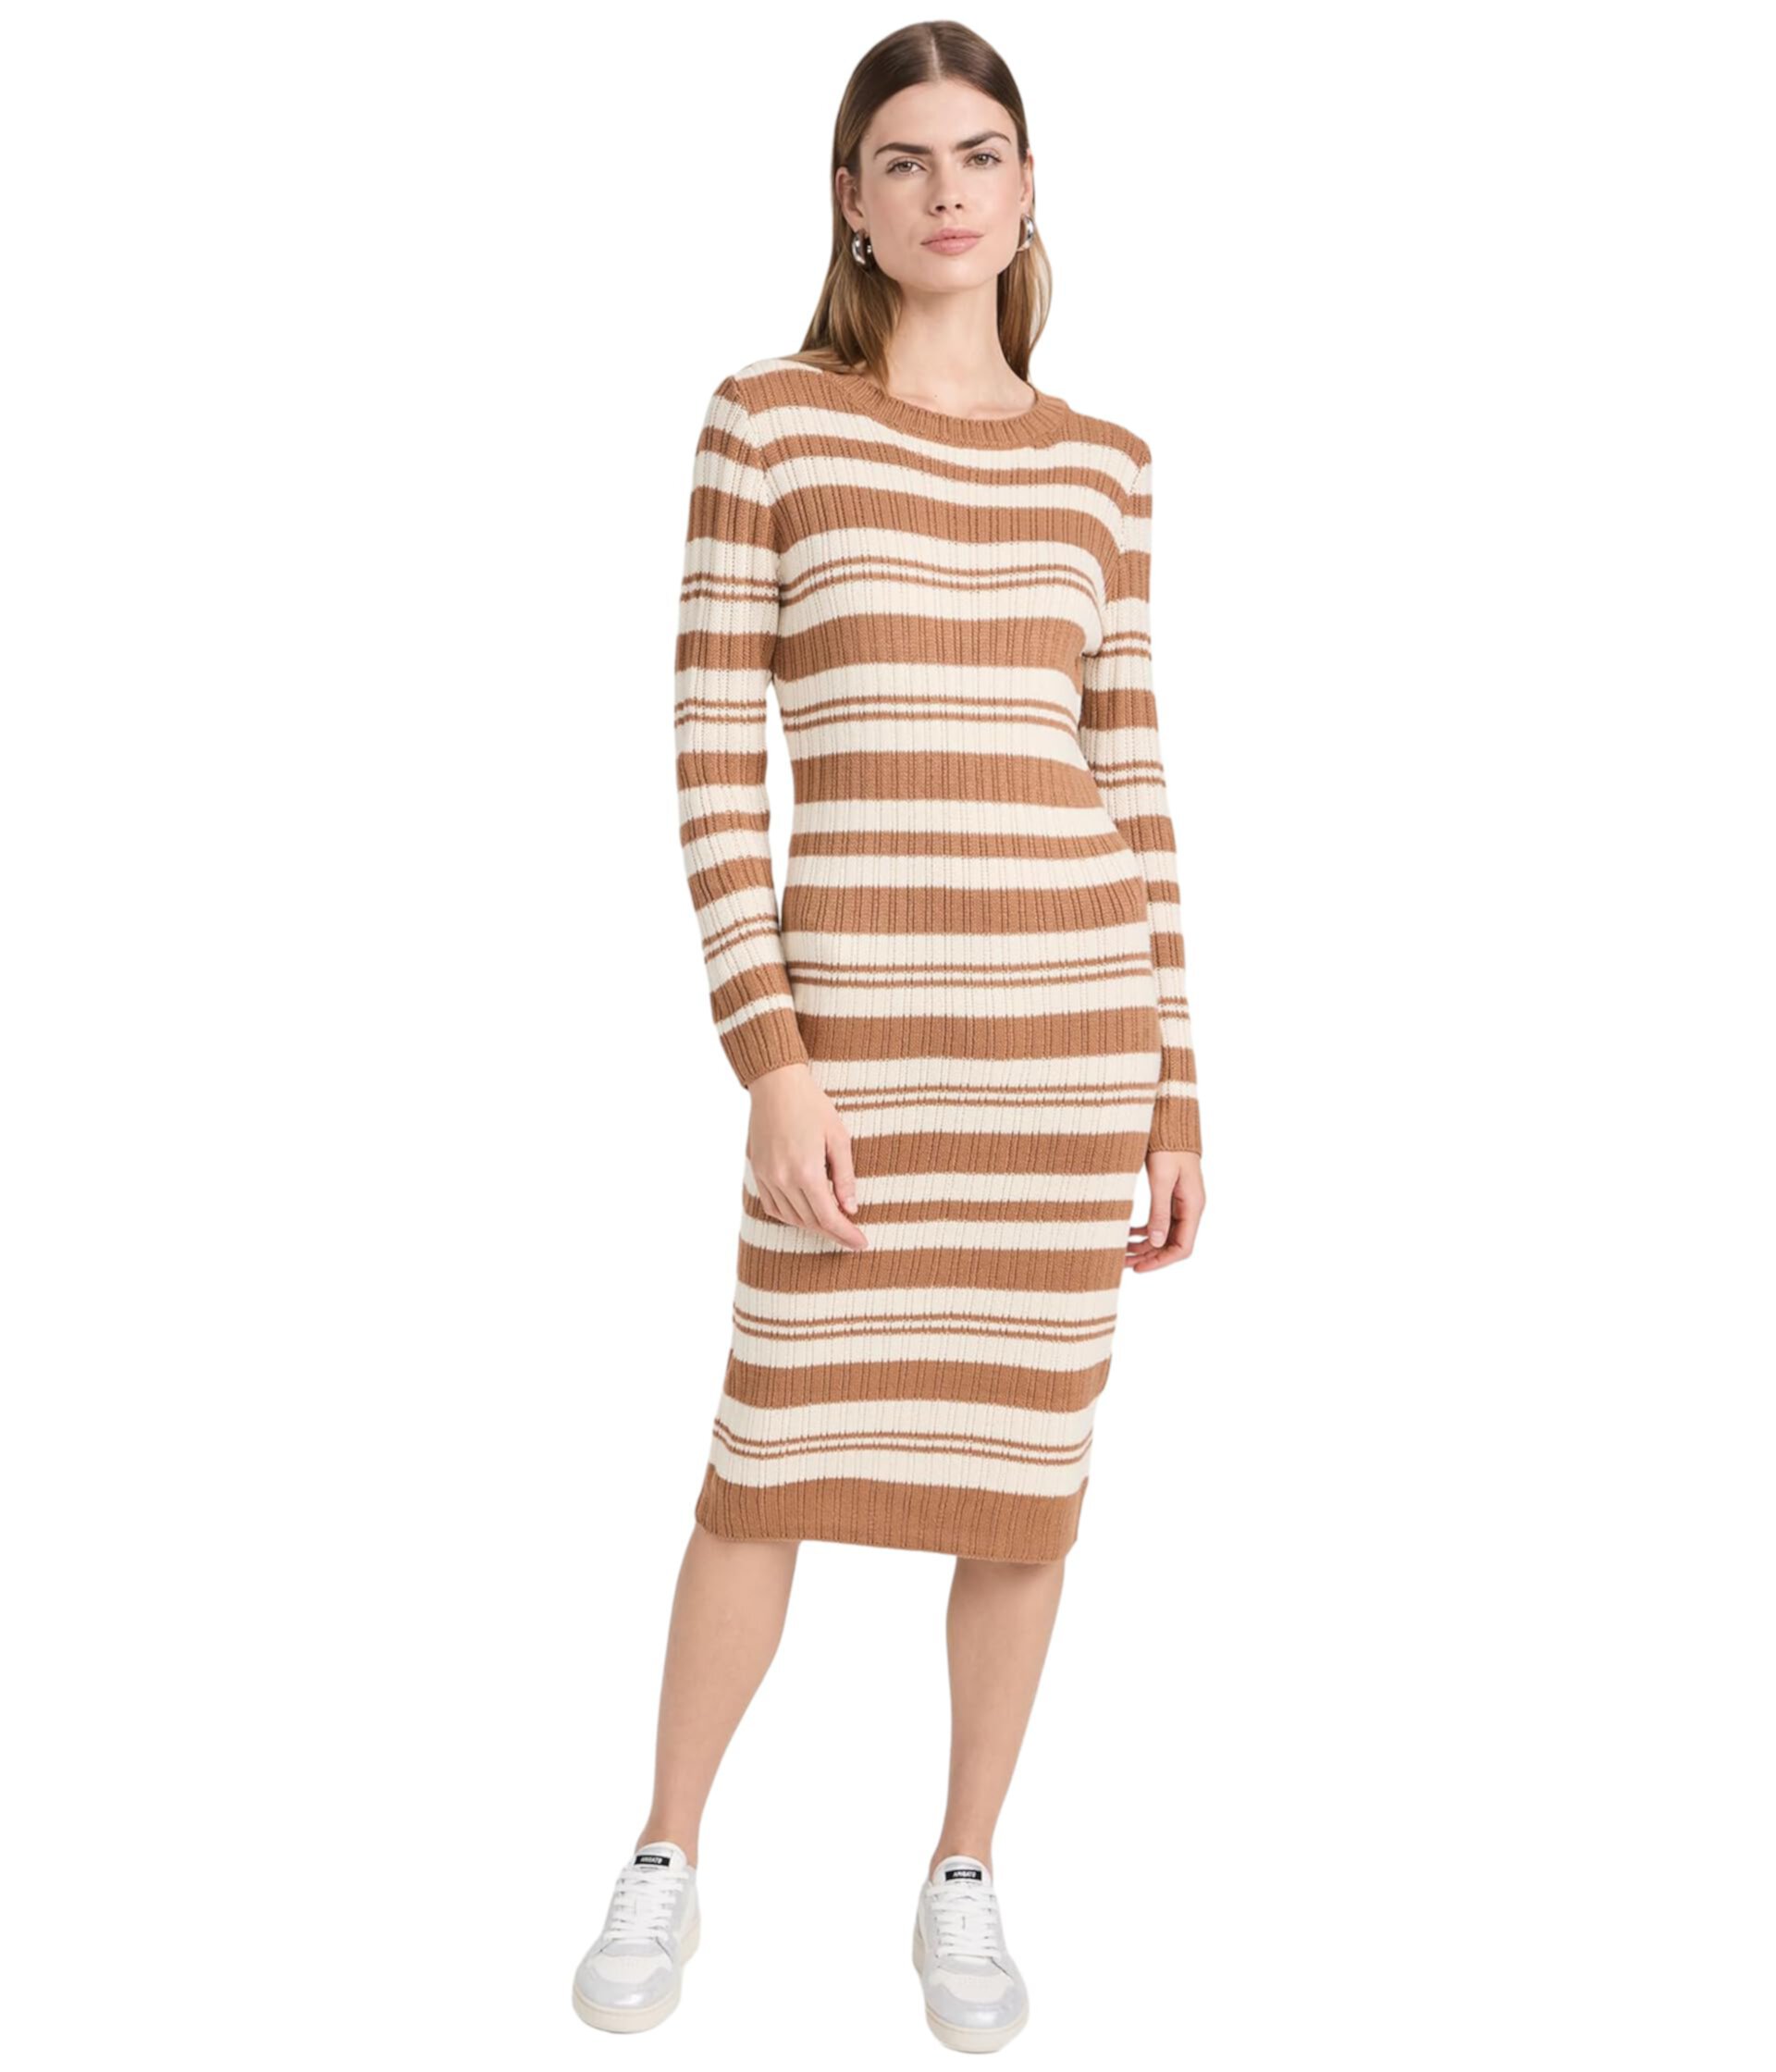 Платье-свитер в полоску Duo Line & Dot